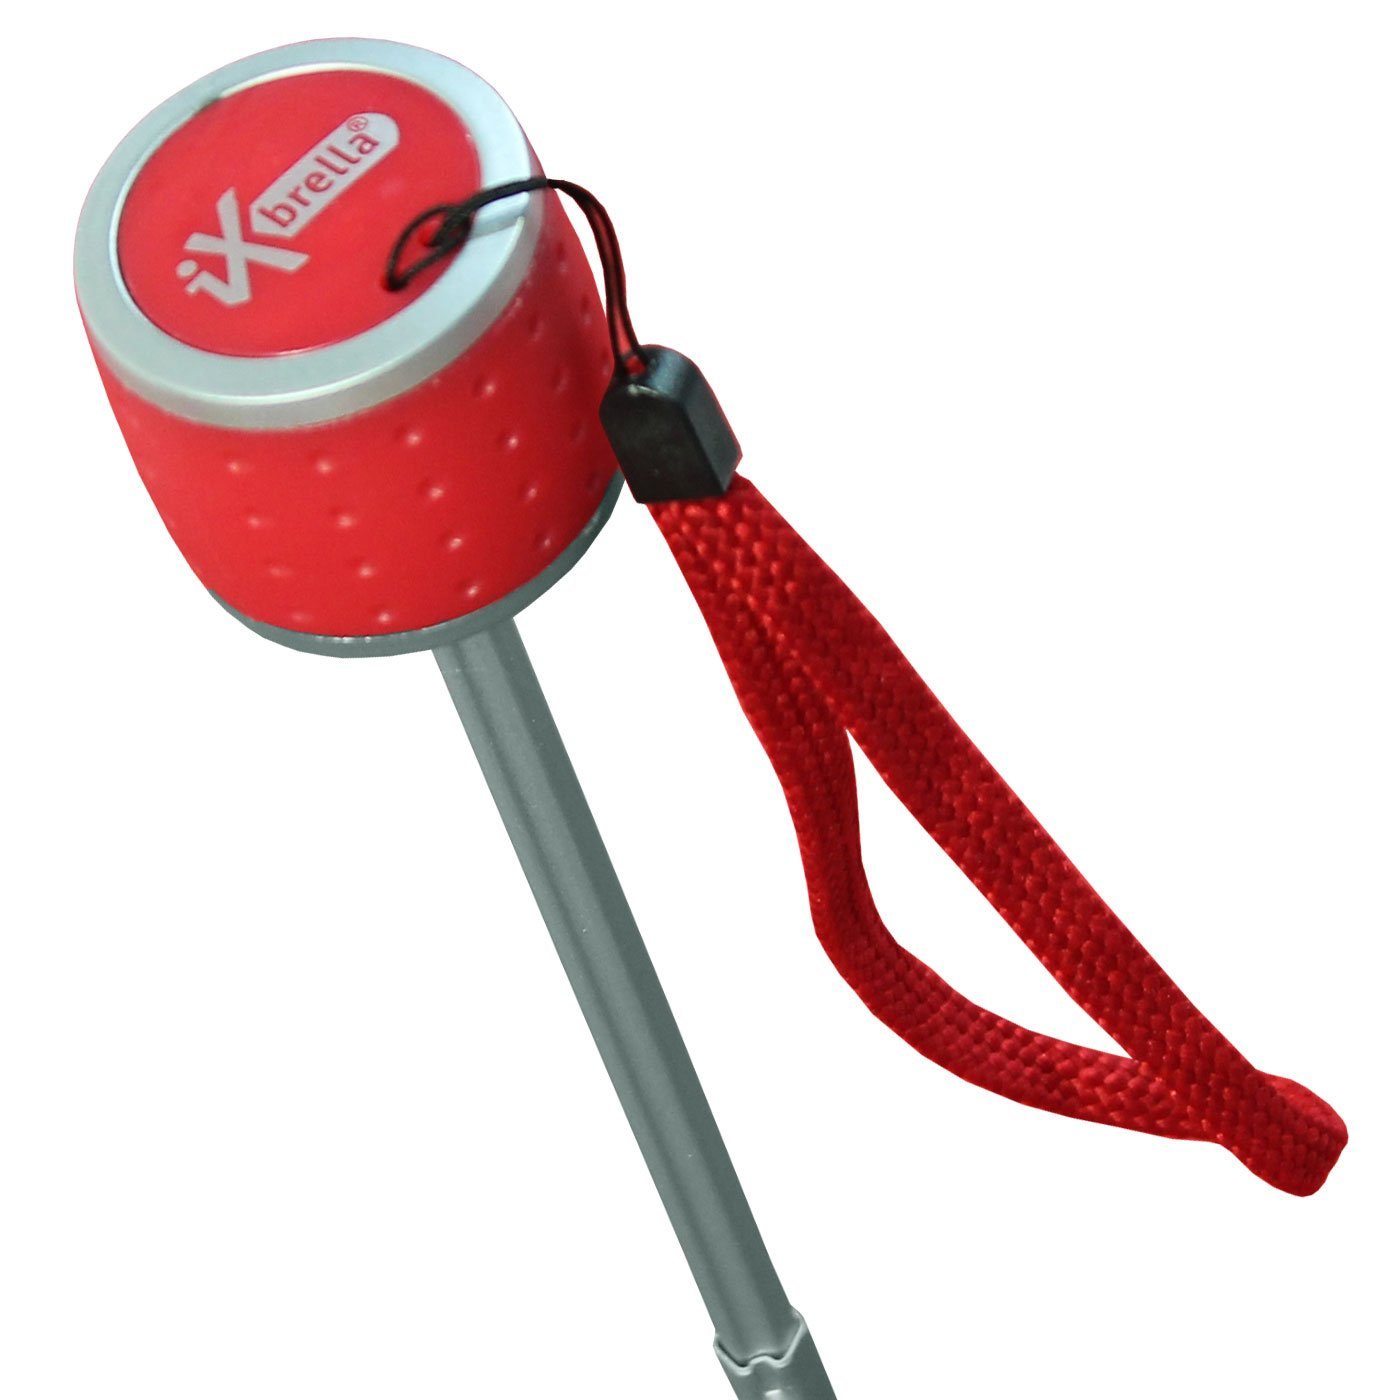 leicht, Ultra Taschenregenschirm extra großem farbenfroh iX-brella - mit - Dach rot Mini Light